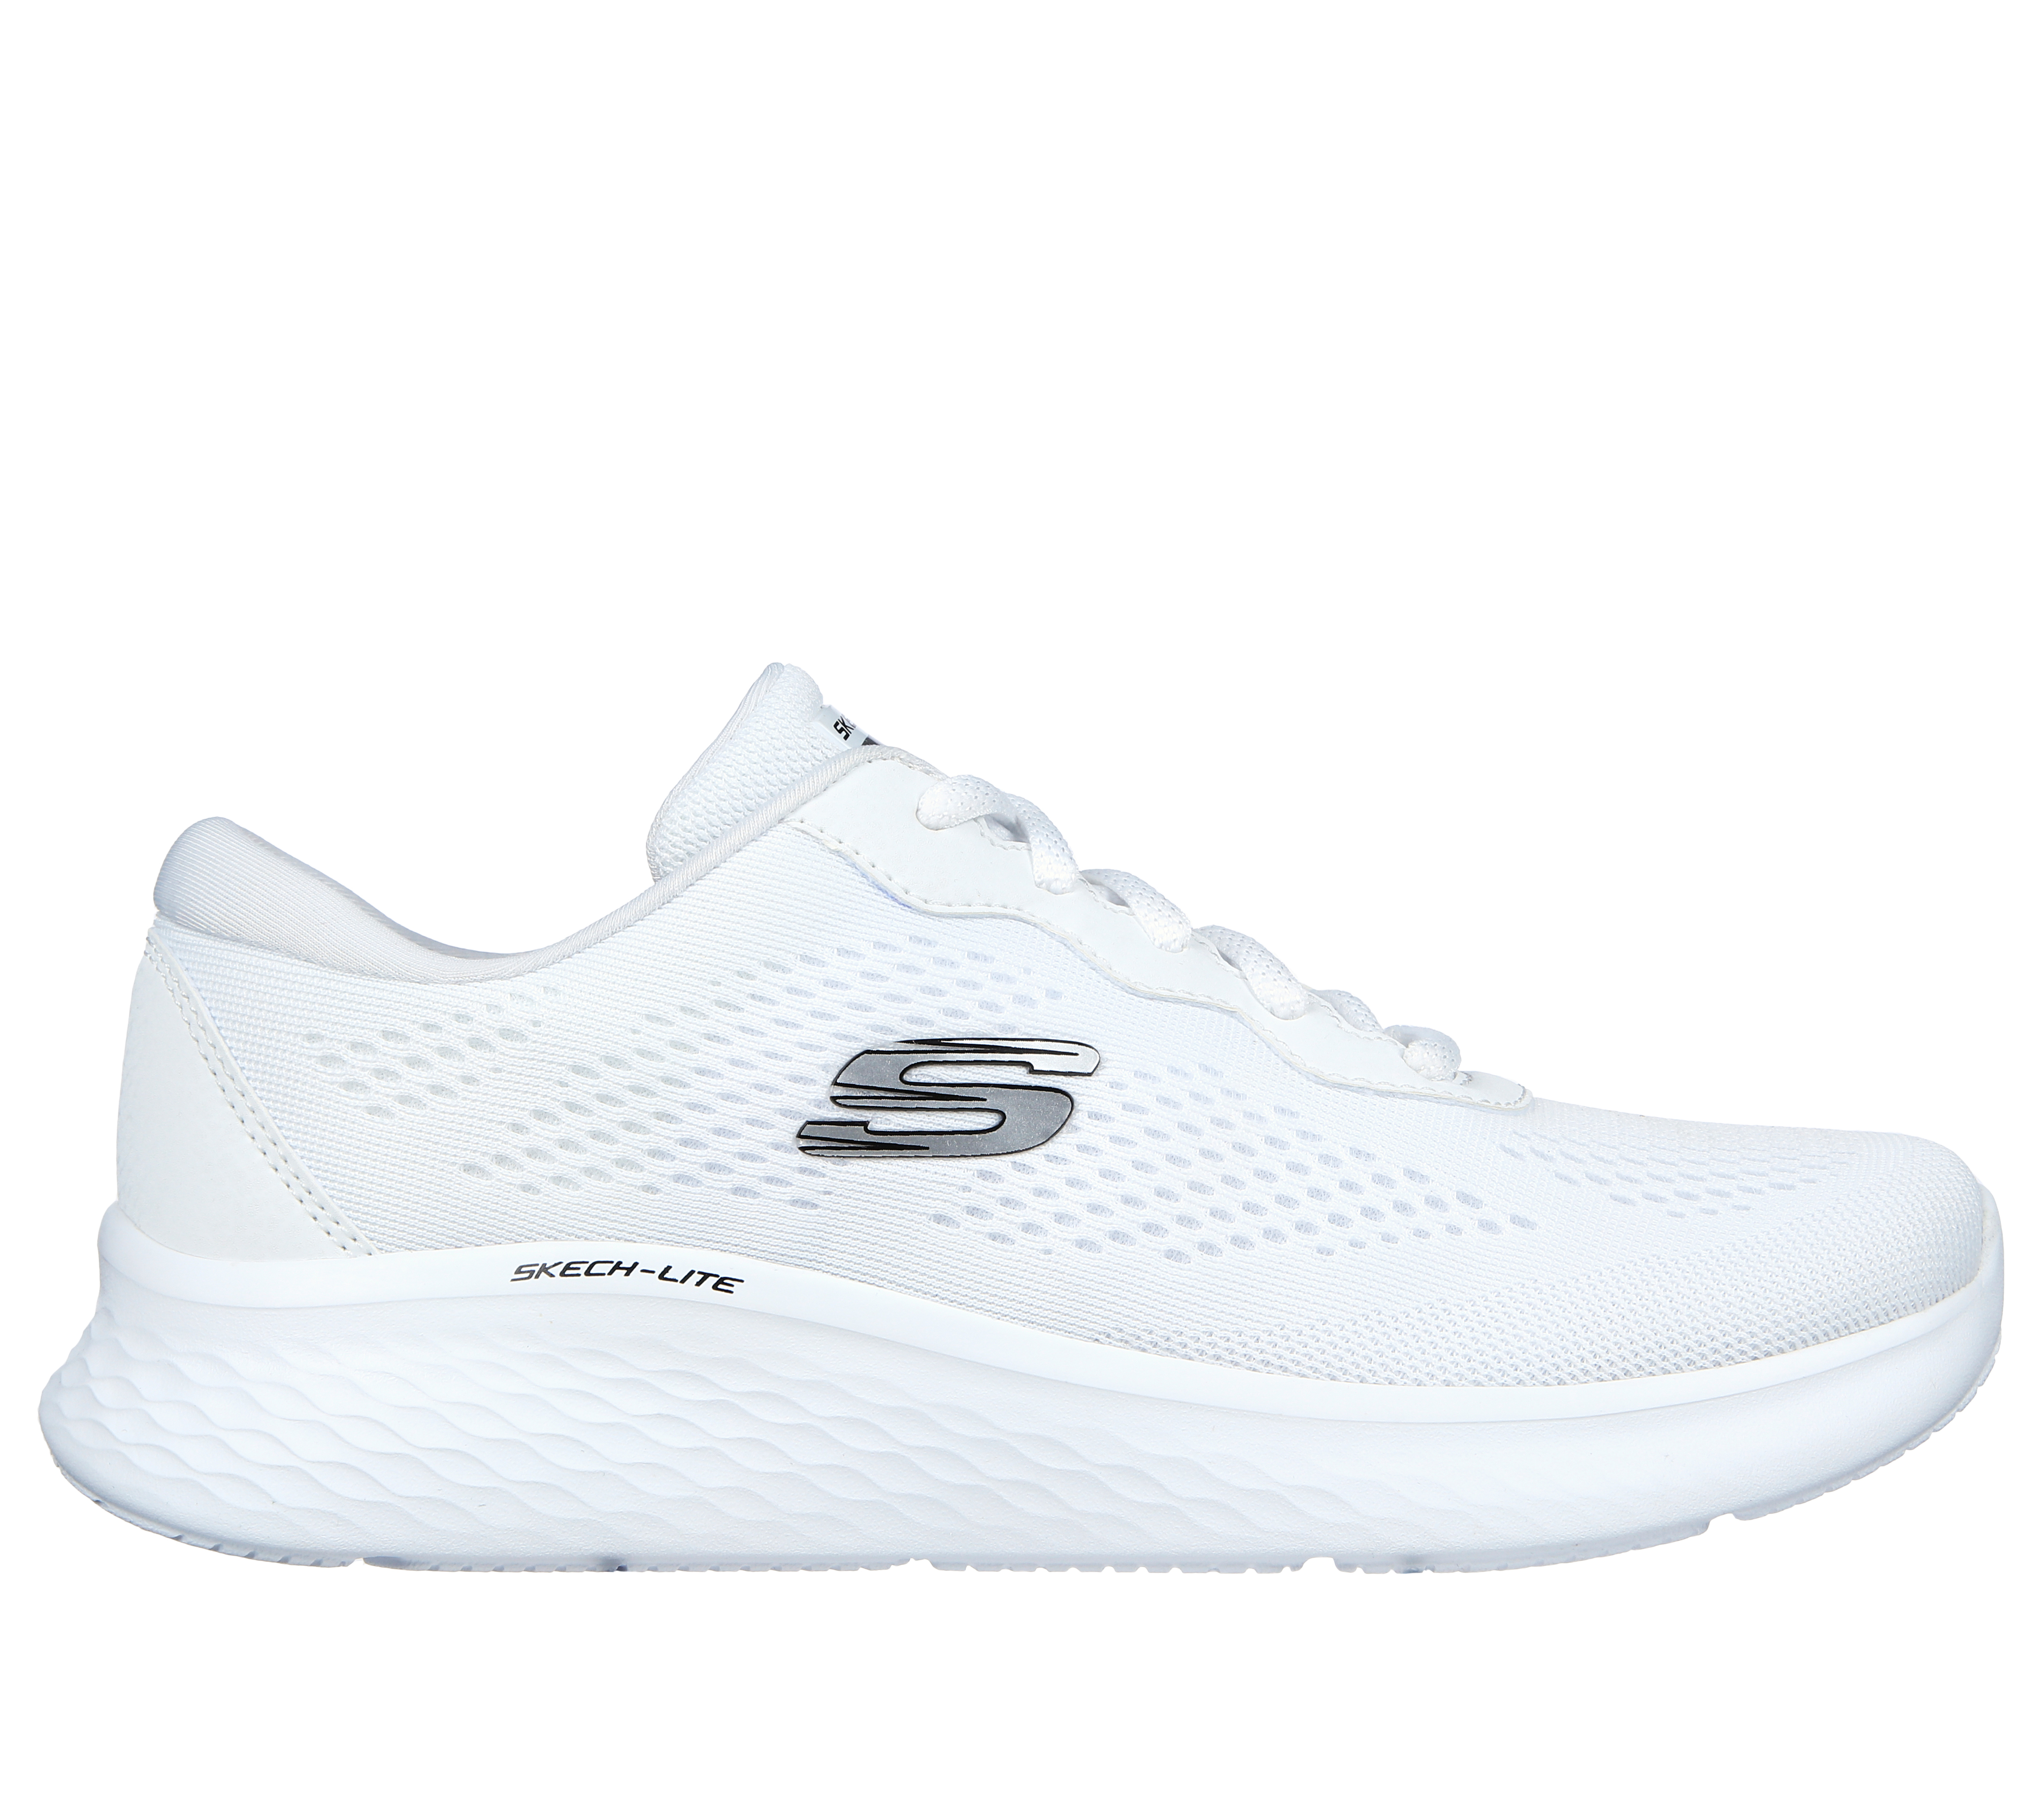 Shop Skechers Women's Slip-On Sports Shoes - SKECH LITE PRO Online